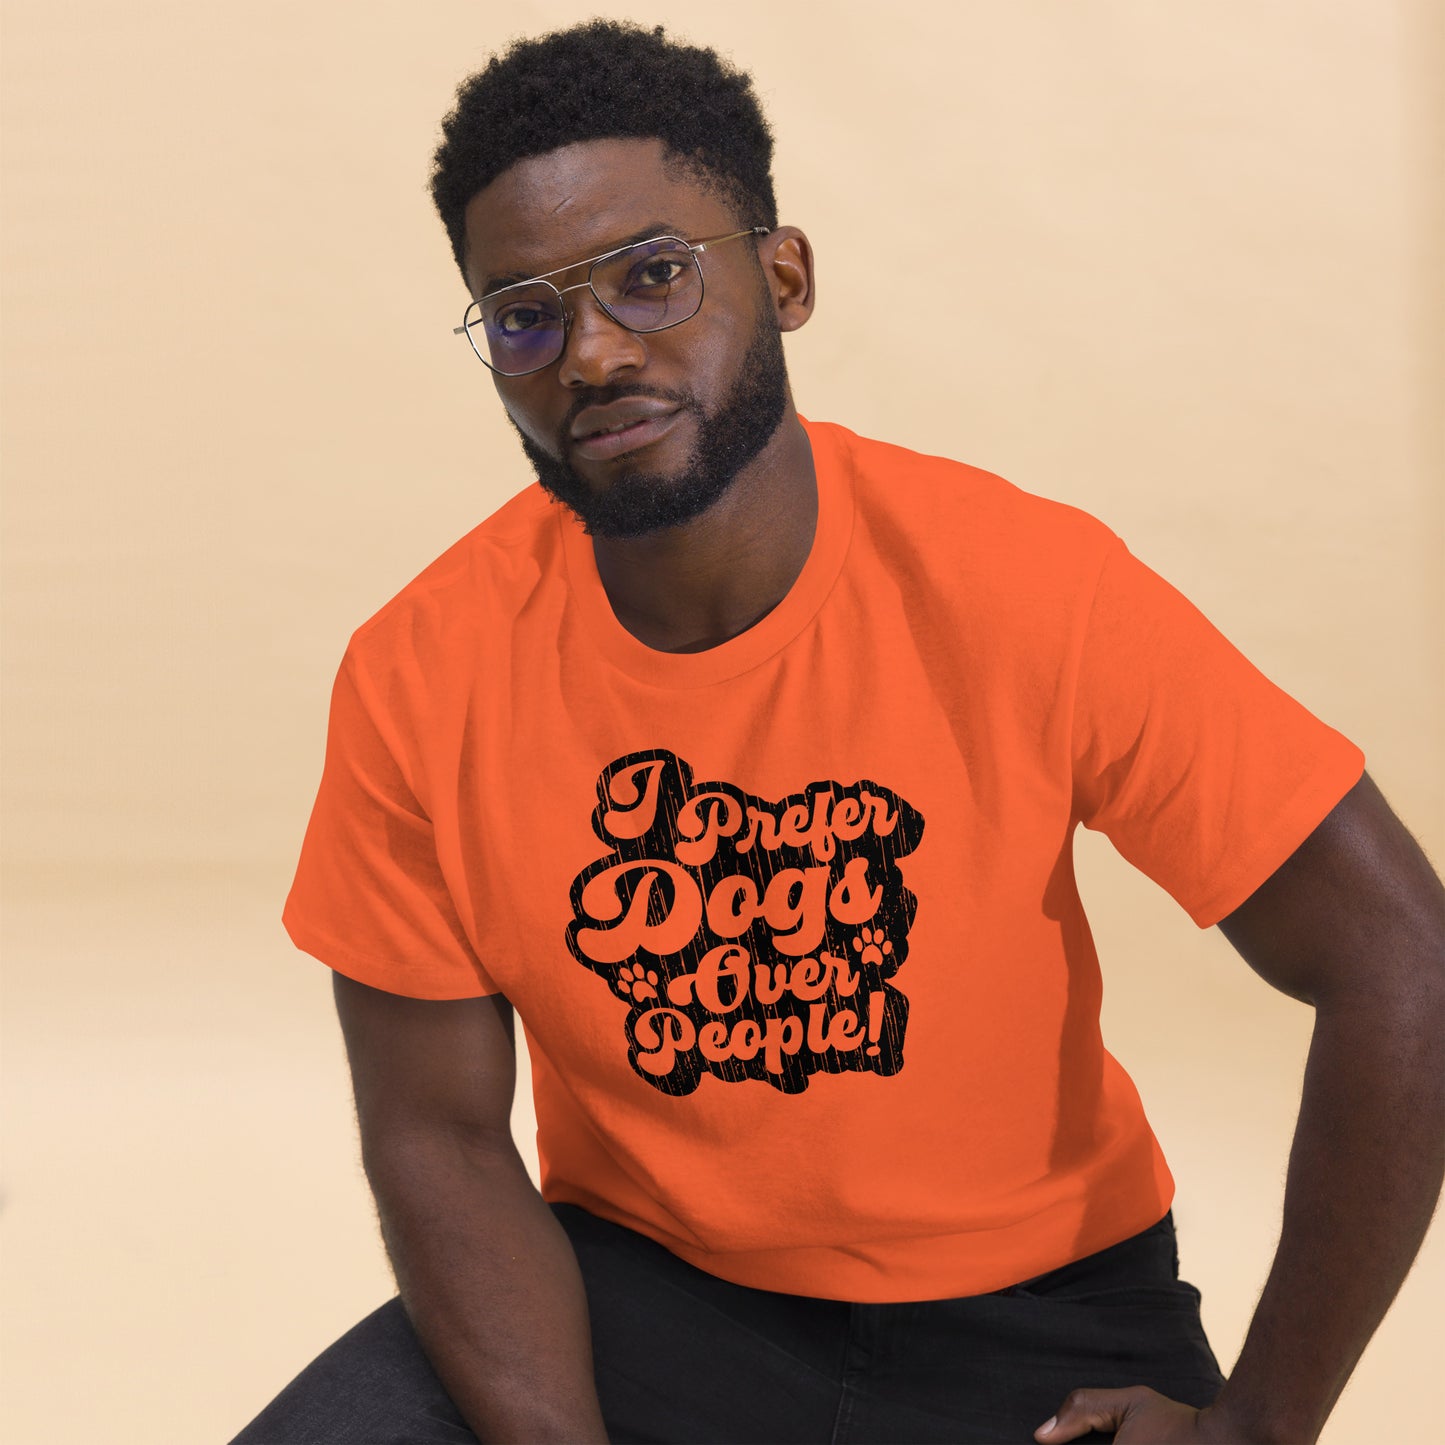 I prefer dogs over people men’s t-shirts by Dog Artistry orange color